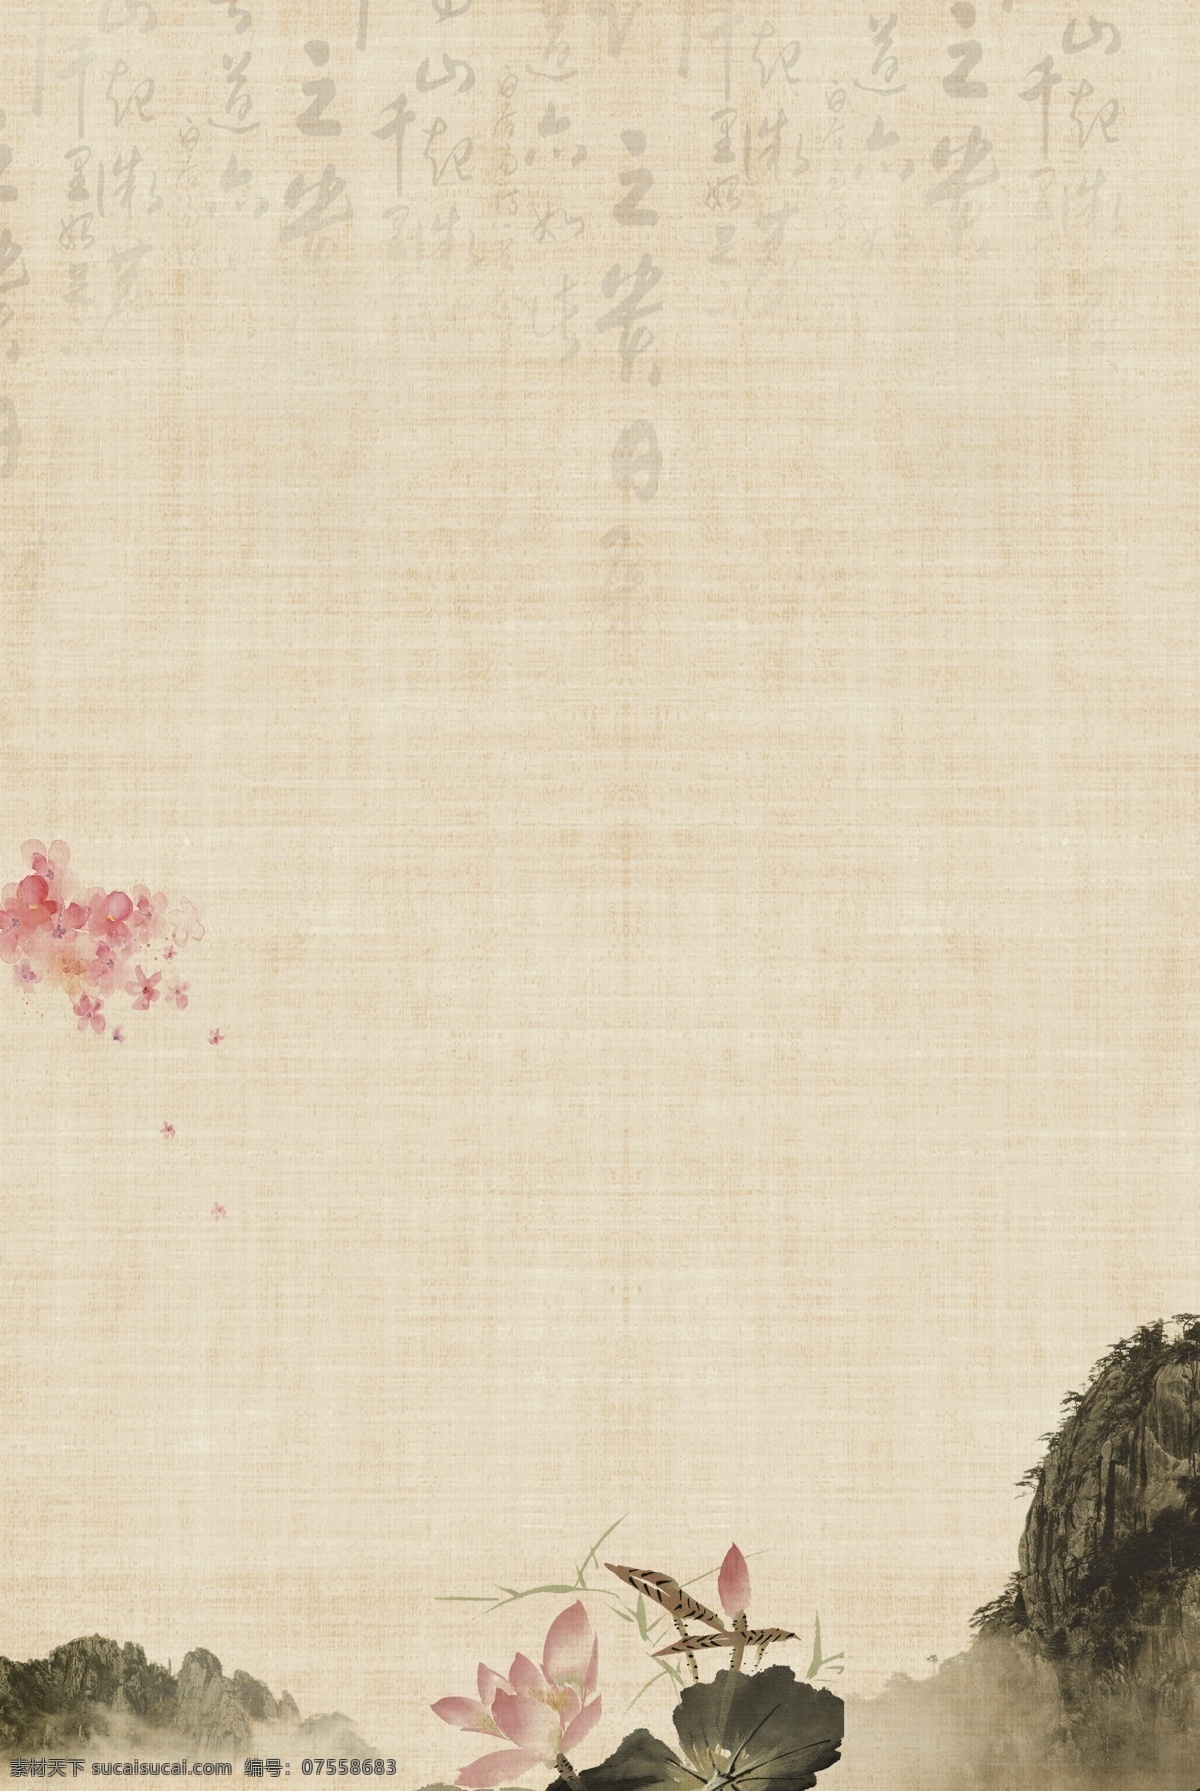 典雅 水墨 渐变 质朴 古风 海报 背景 复古 中国风 文艺 清新 质感 纹理